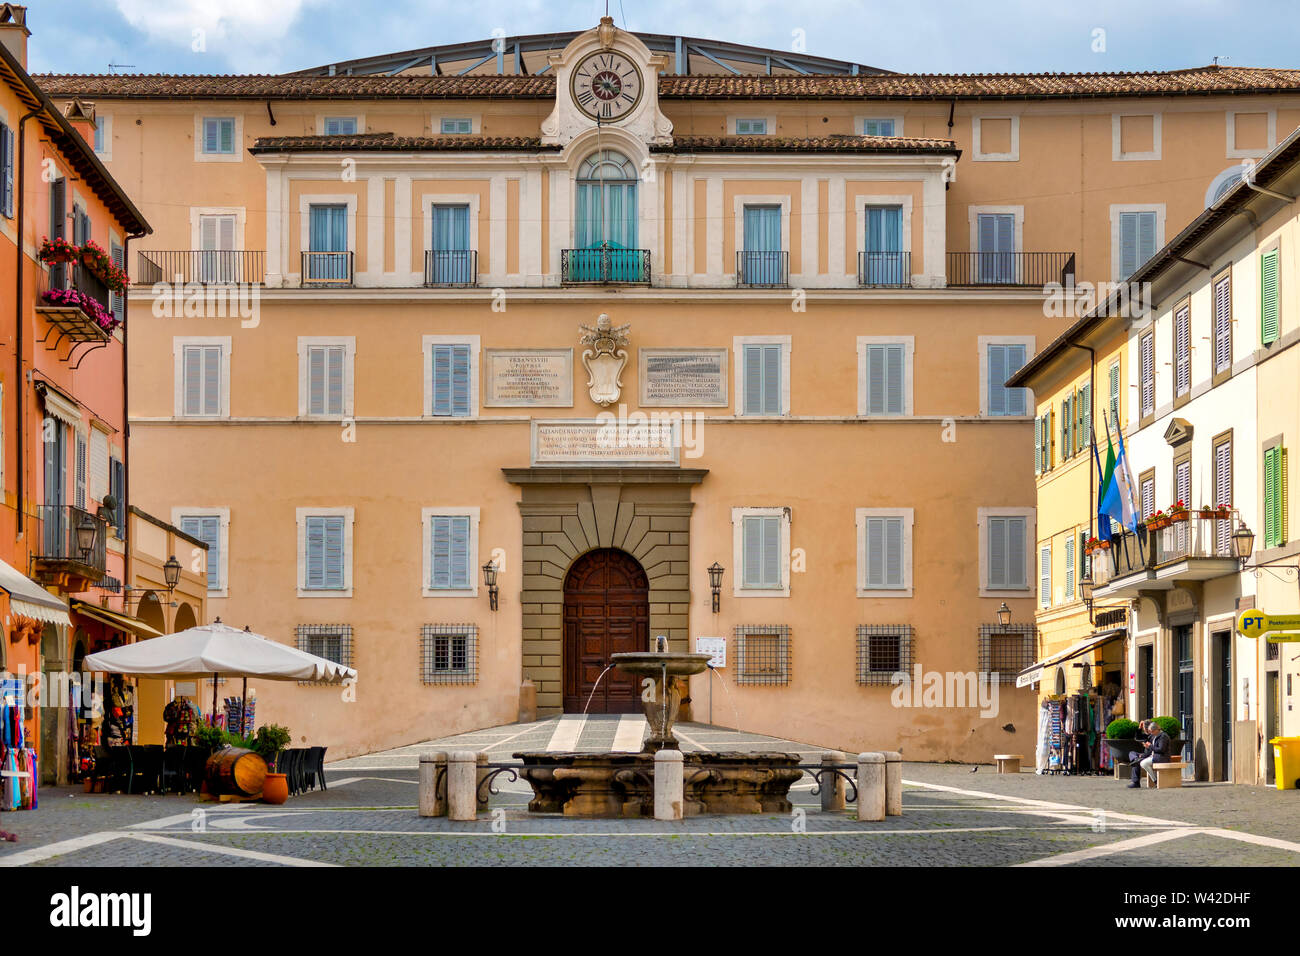 The facade of the Apostolic Palace, Castel Gandolfo, Italy Stock Photo